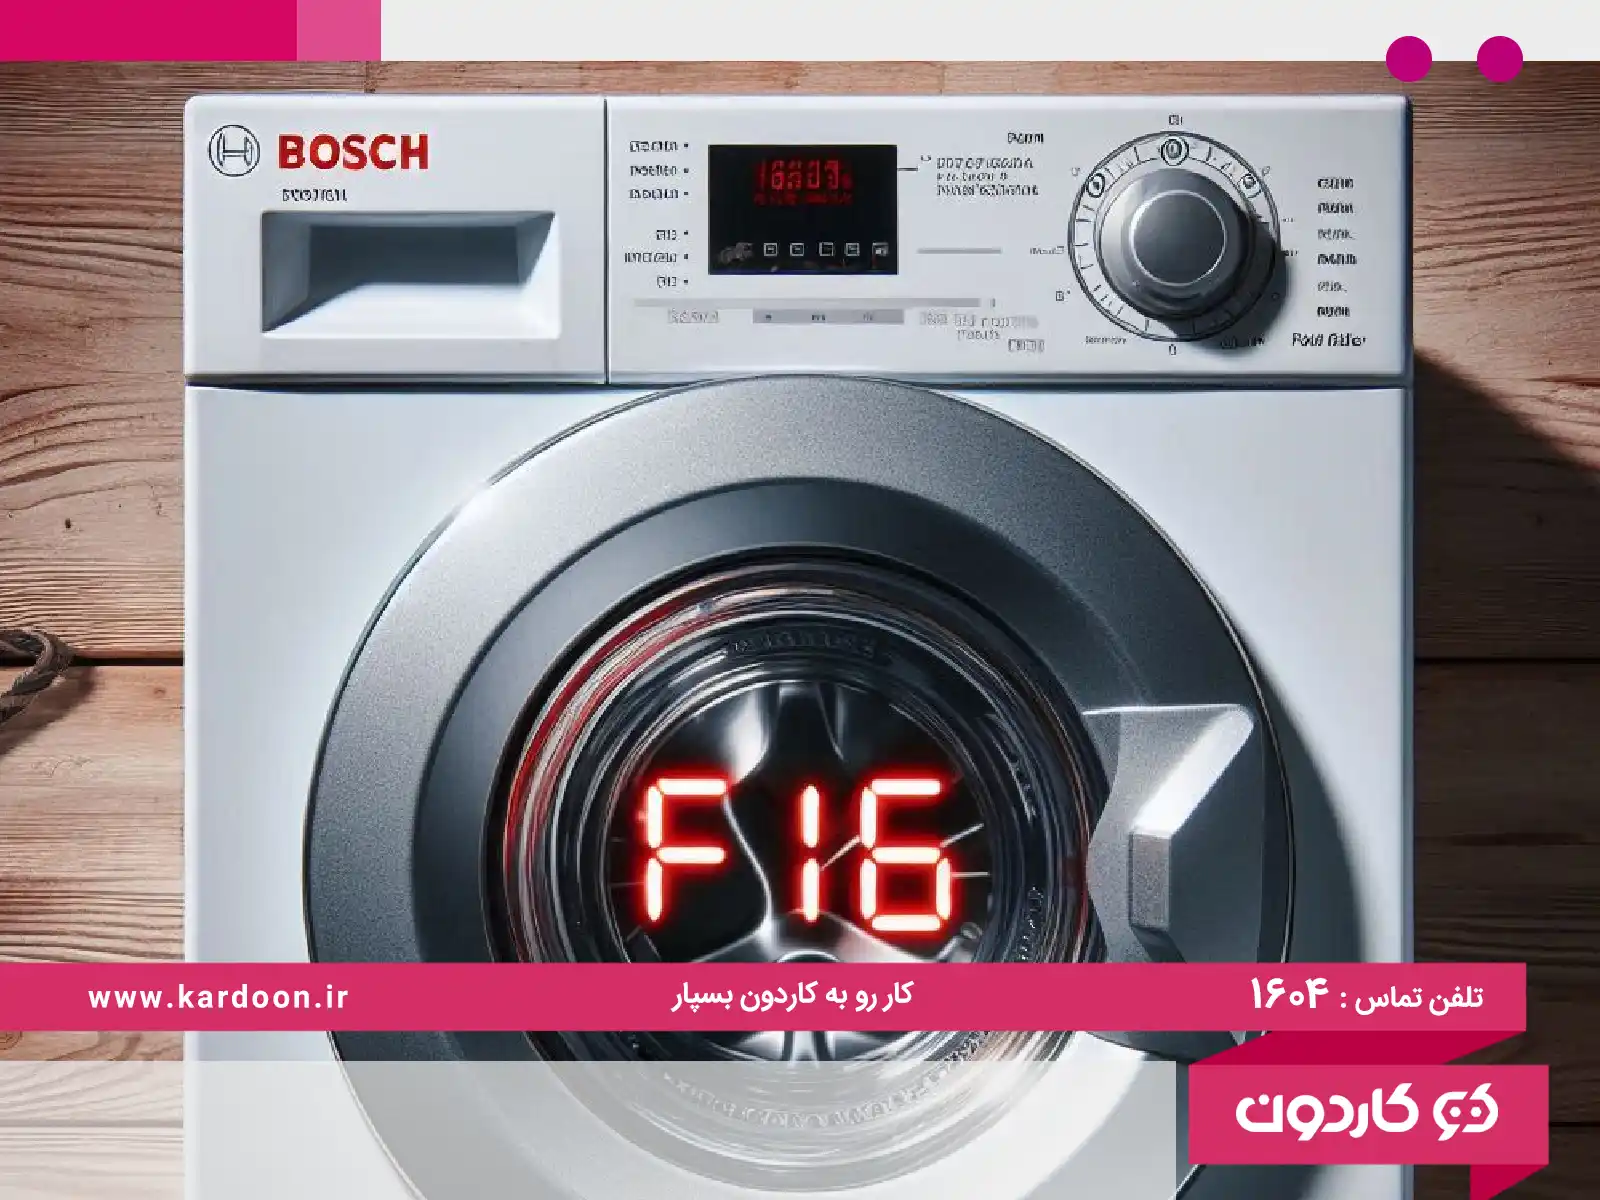 Bosch washing machine error f16